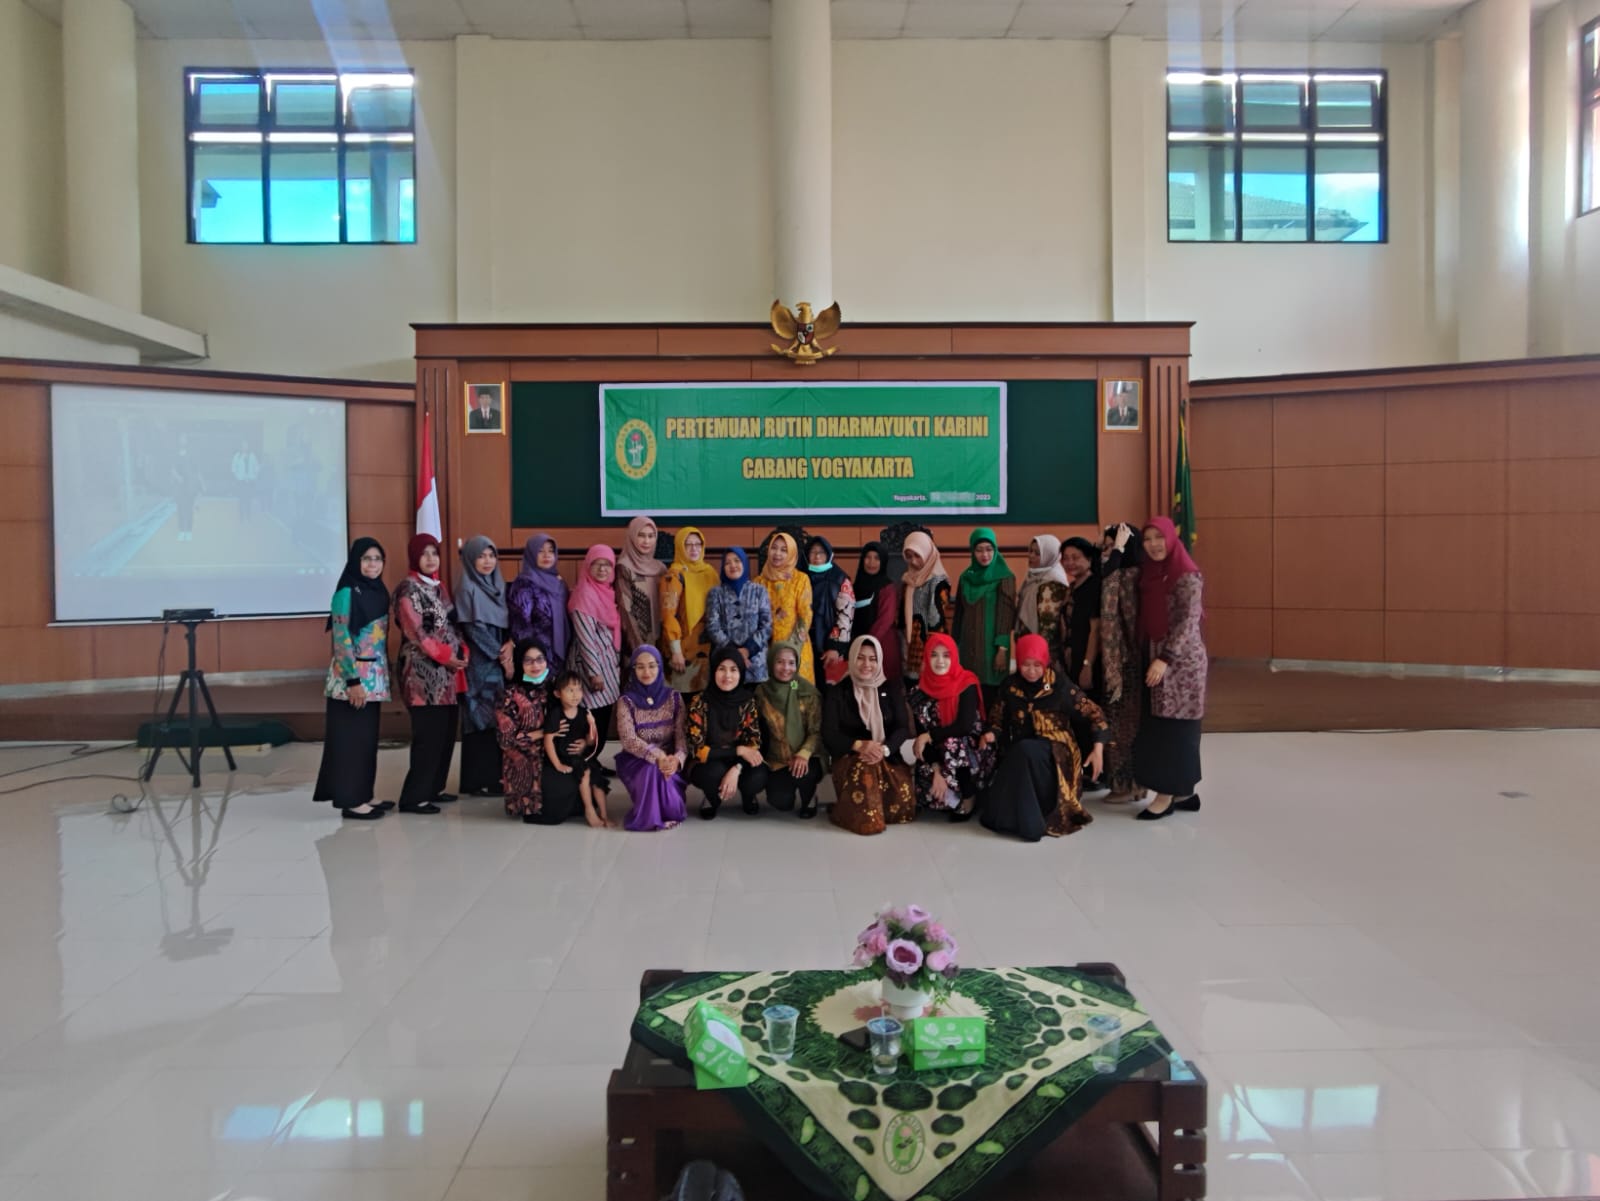 Pertemuan Rutin Dharmayukti Karini Cabang Yogyakarta